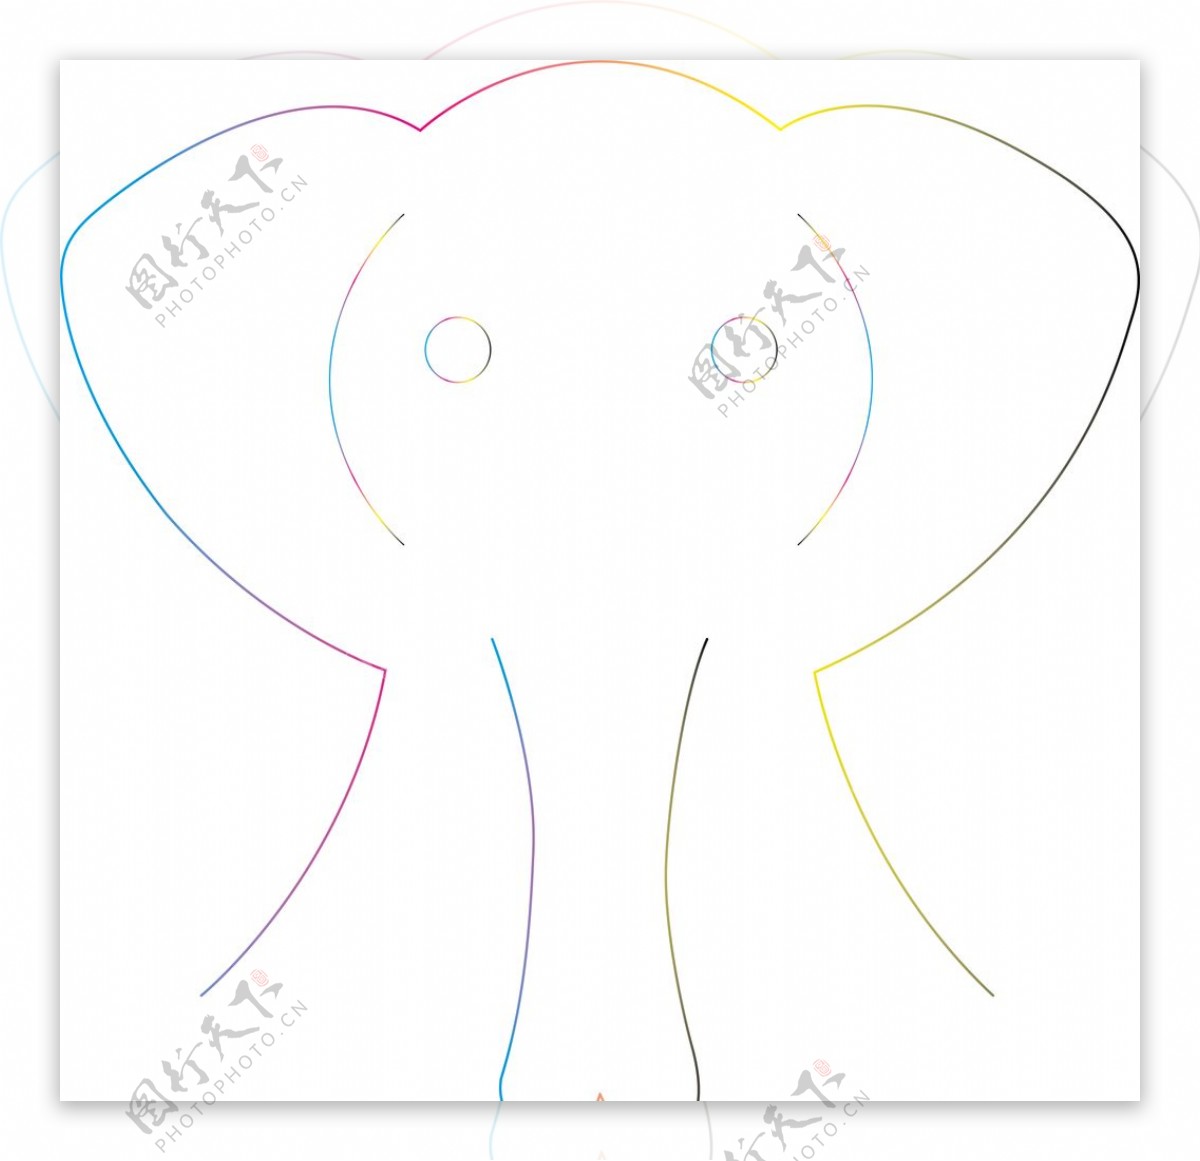 大象 动物 哺乳动物 - Pixabay上的免费图片 - Pixabay